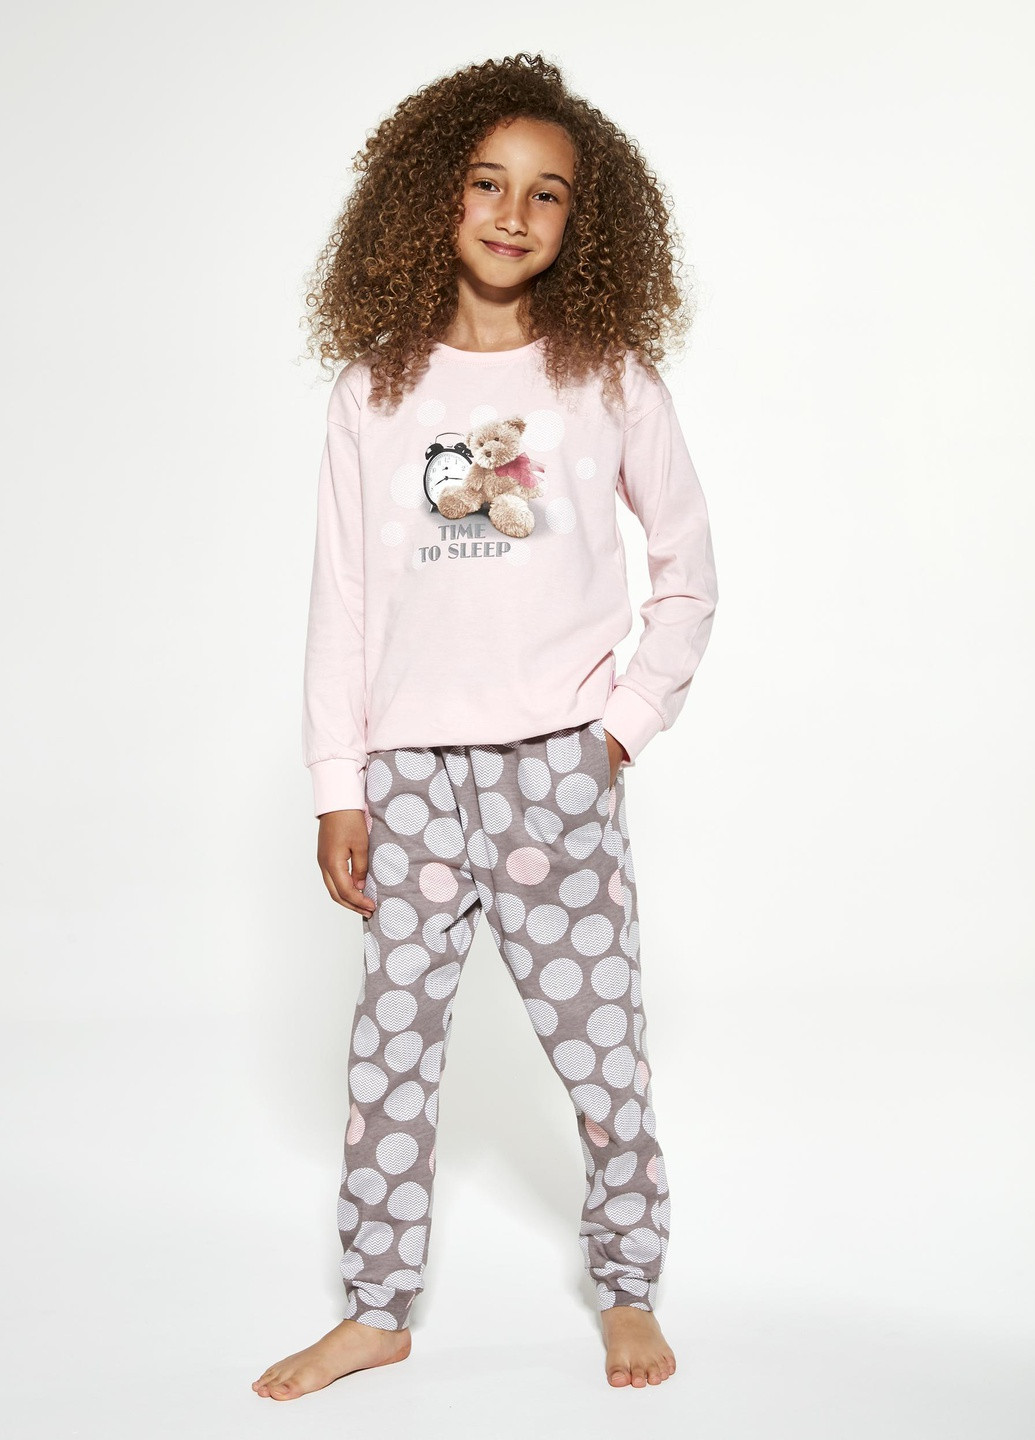 Светло-розовая всесезон пижама для девочек 139 time to sleep 994-21 свитшот + брюки Cornette